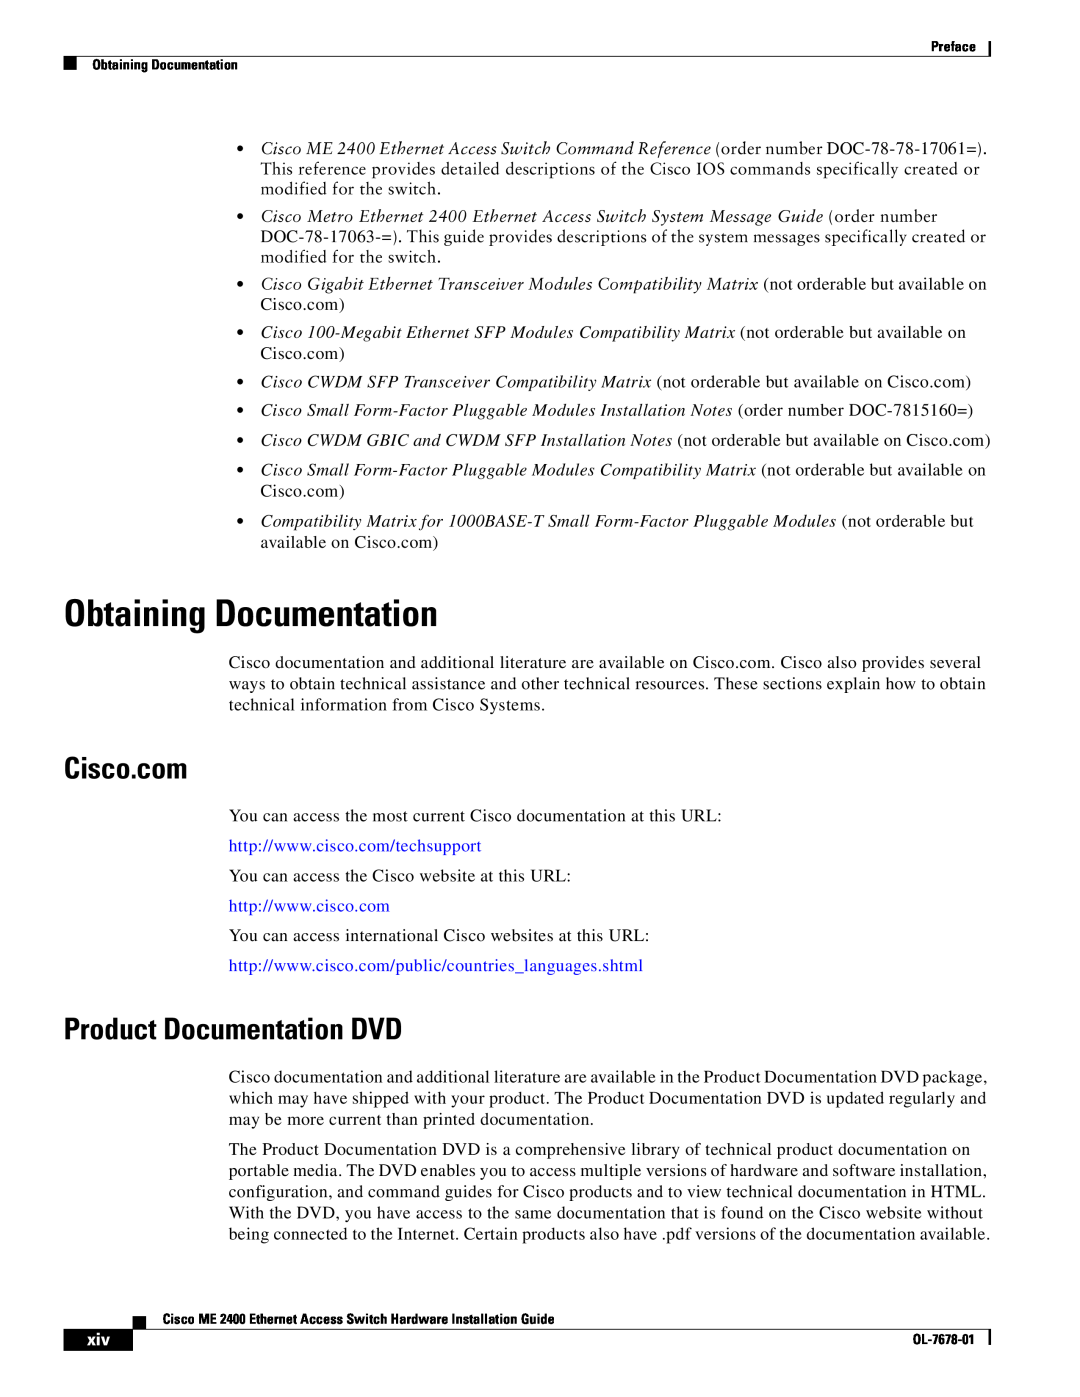 Cisco Systems ME 2400 manual Obtaining Documentation, Cisco.com, Product Documentation DVD 